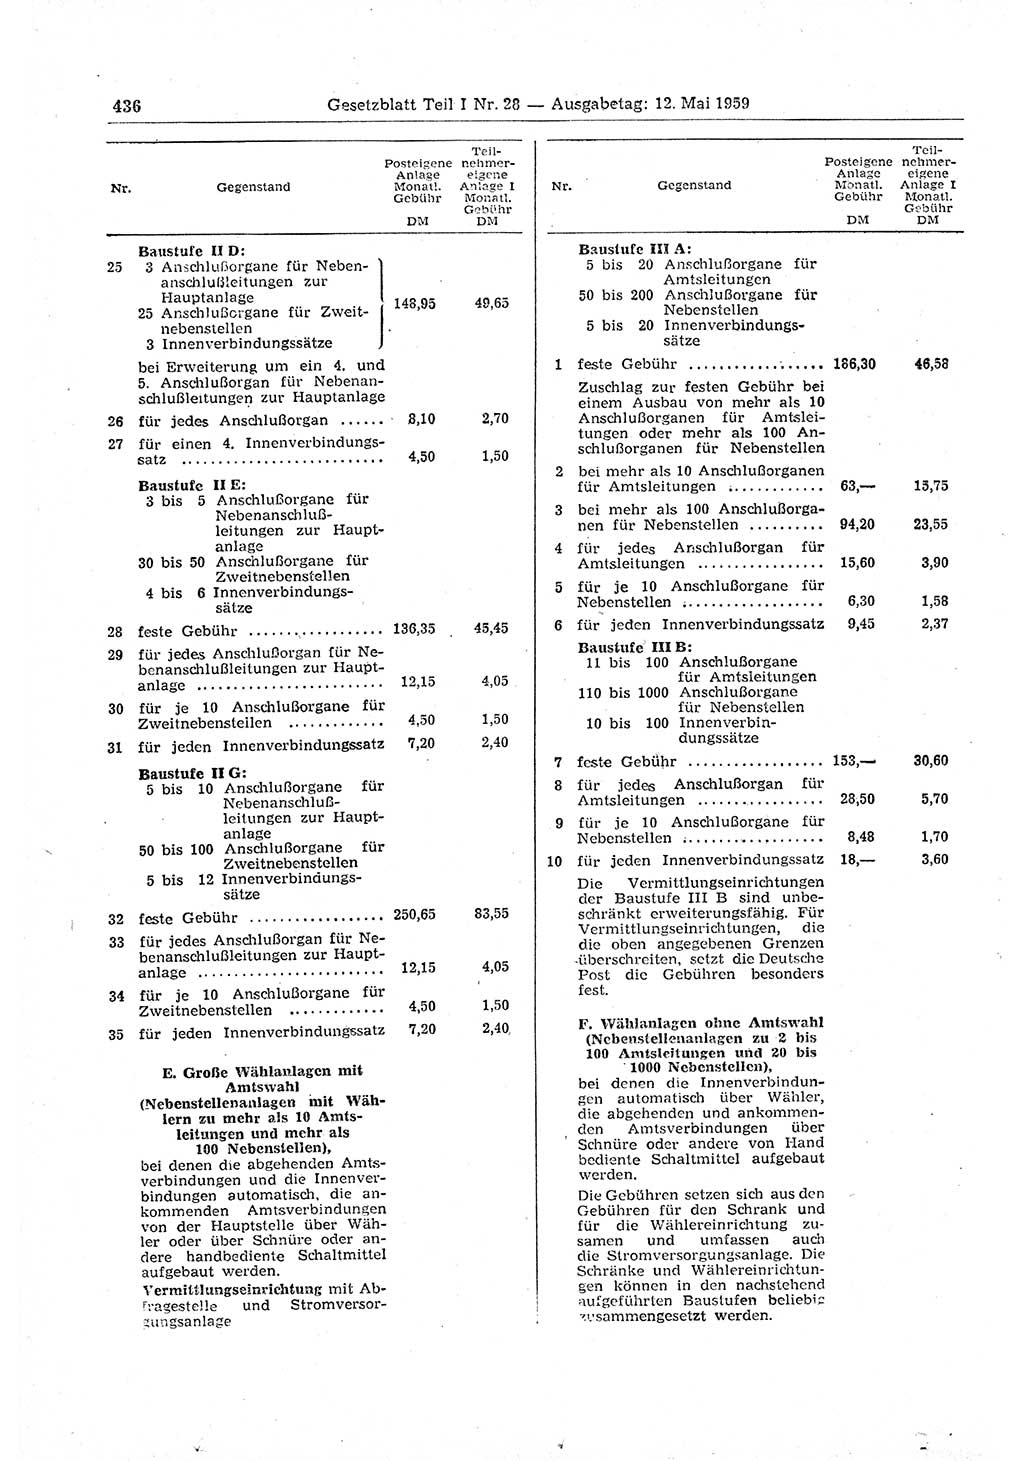 Gesetzblatt (GBl.) der Deutschen Demokratischen Republik (DDR) Teil Ⅰ 1959, Seite 436 (GBl. DDR Ⅰ 1959, S. 436)